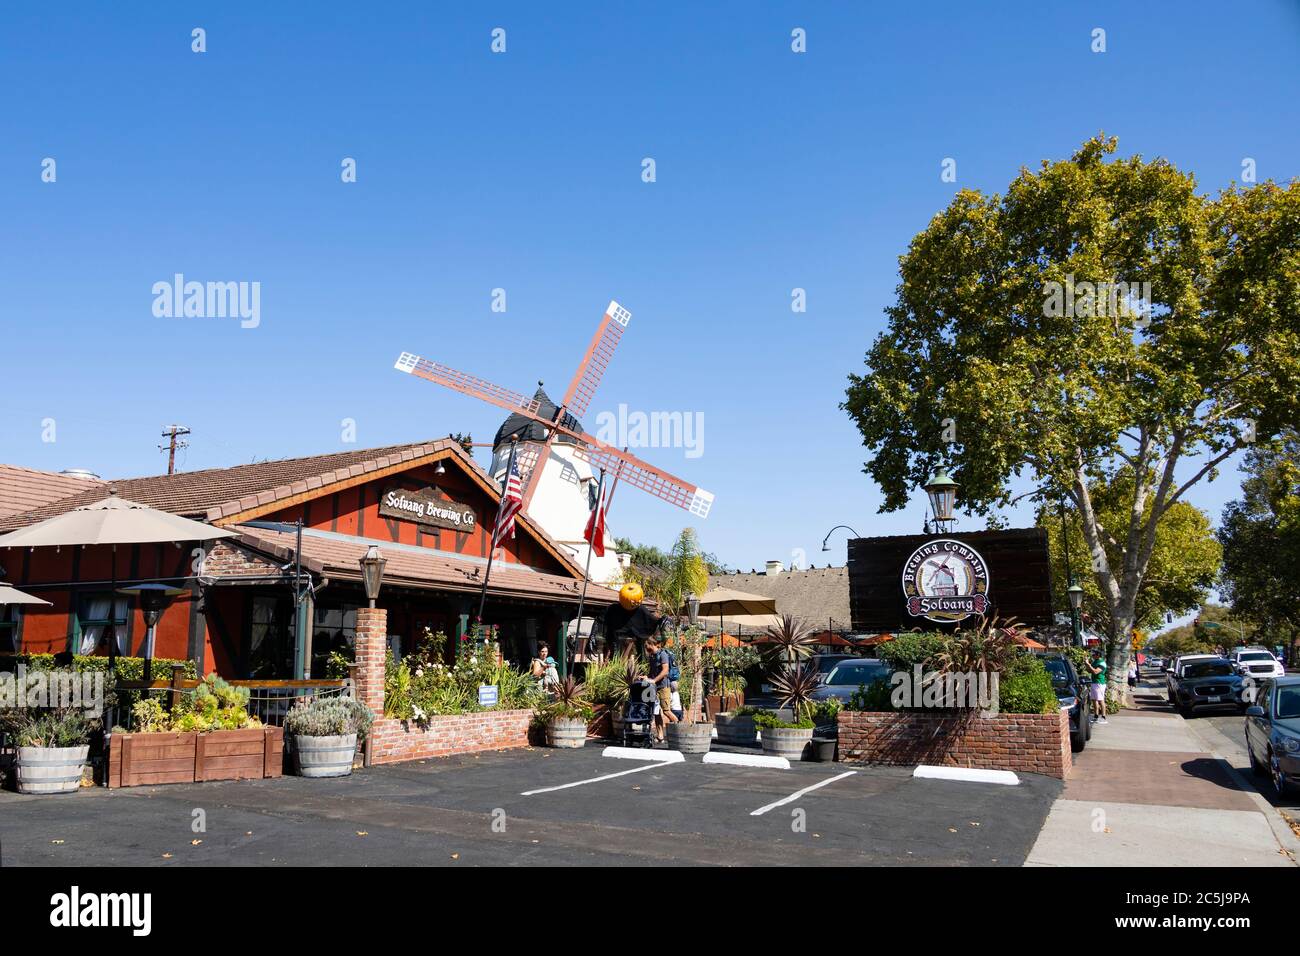 La compagnia di produzione Solvang Brewing, la comunità danese di Solvang, Ynez Valley, California, Stati Uniti d'America Foto Stock